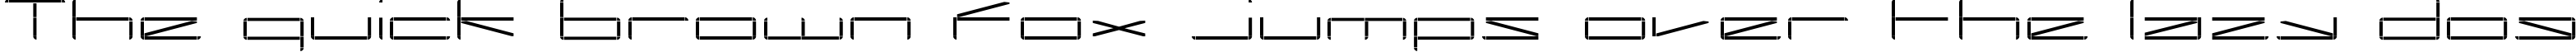 Пример написания шрифтом regular текста на английском